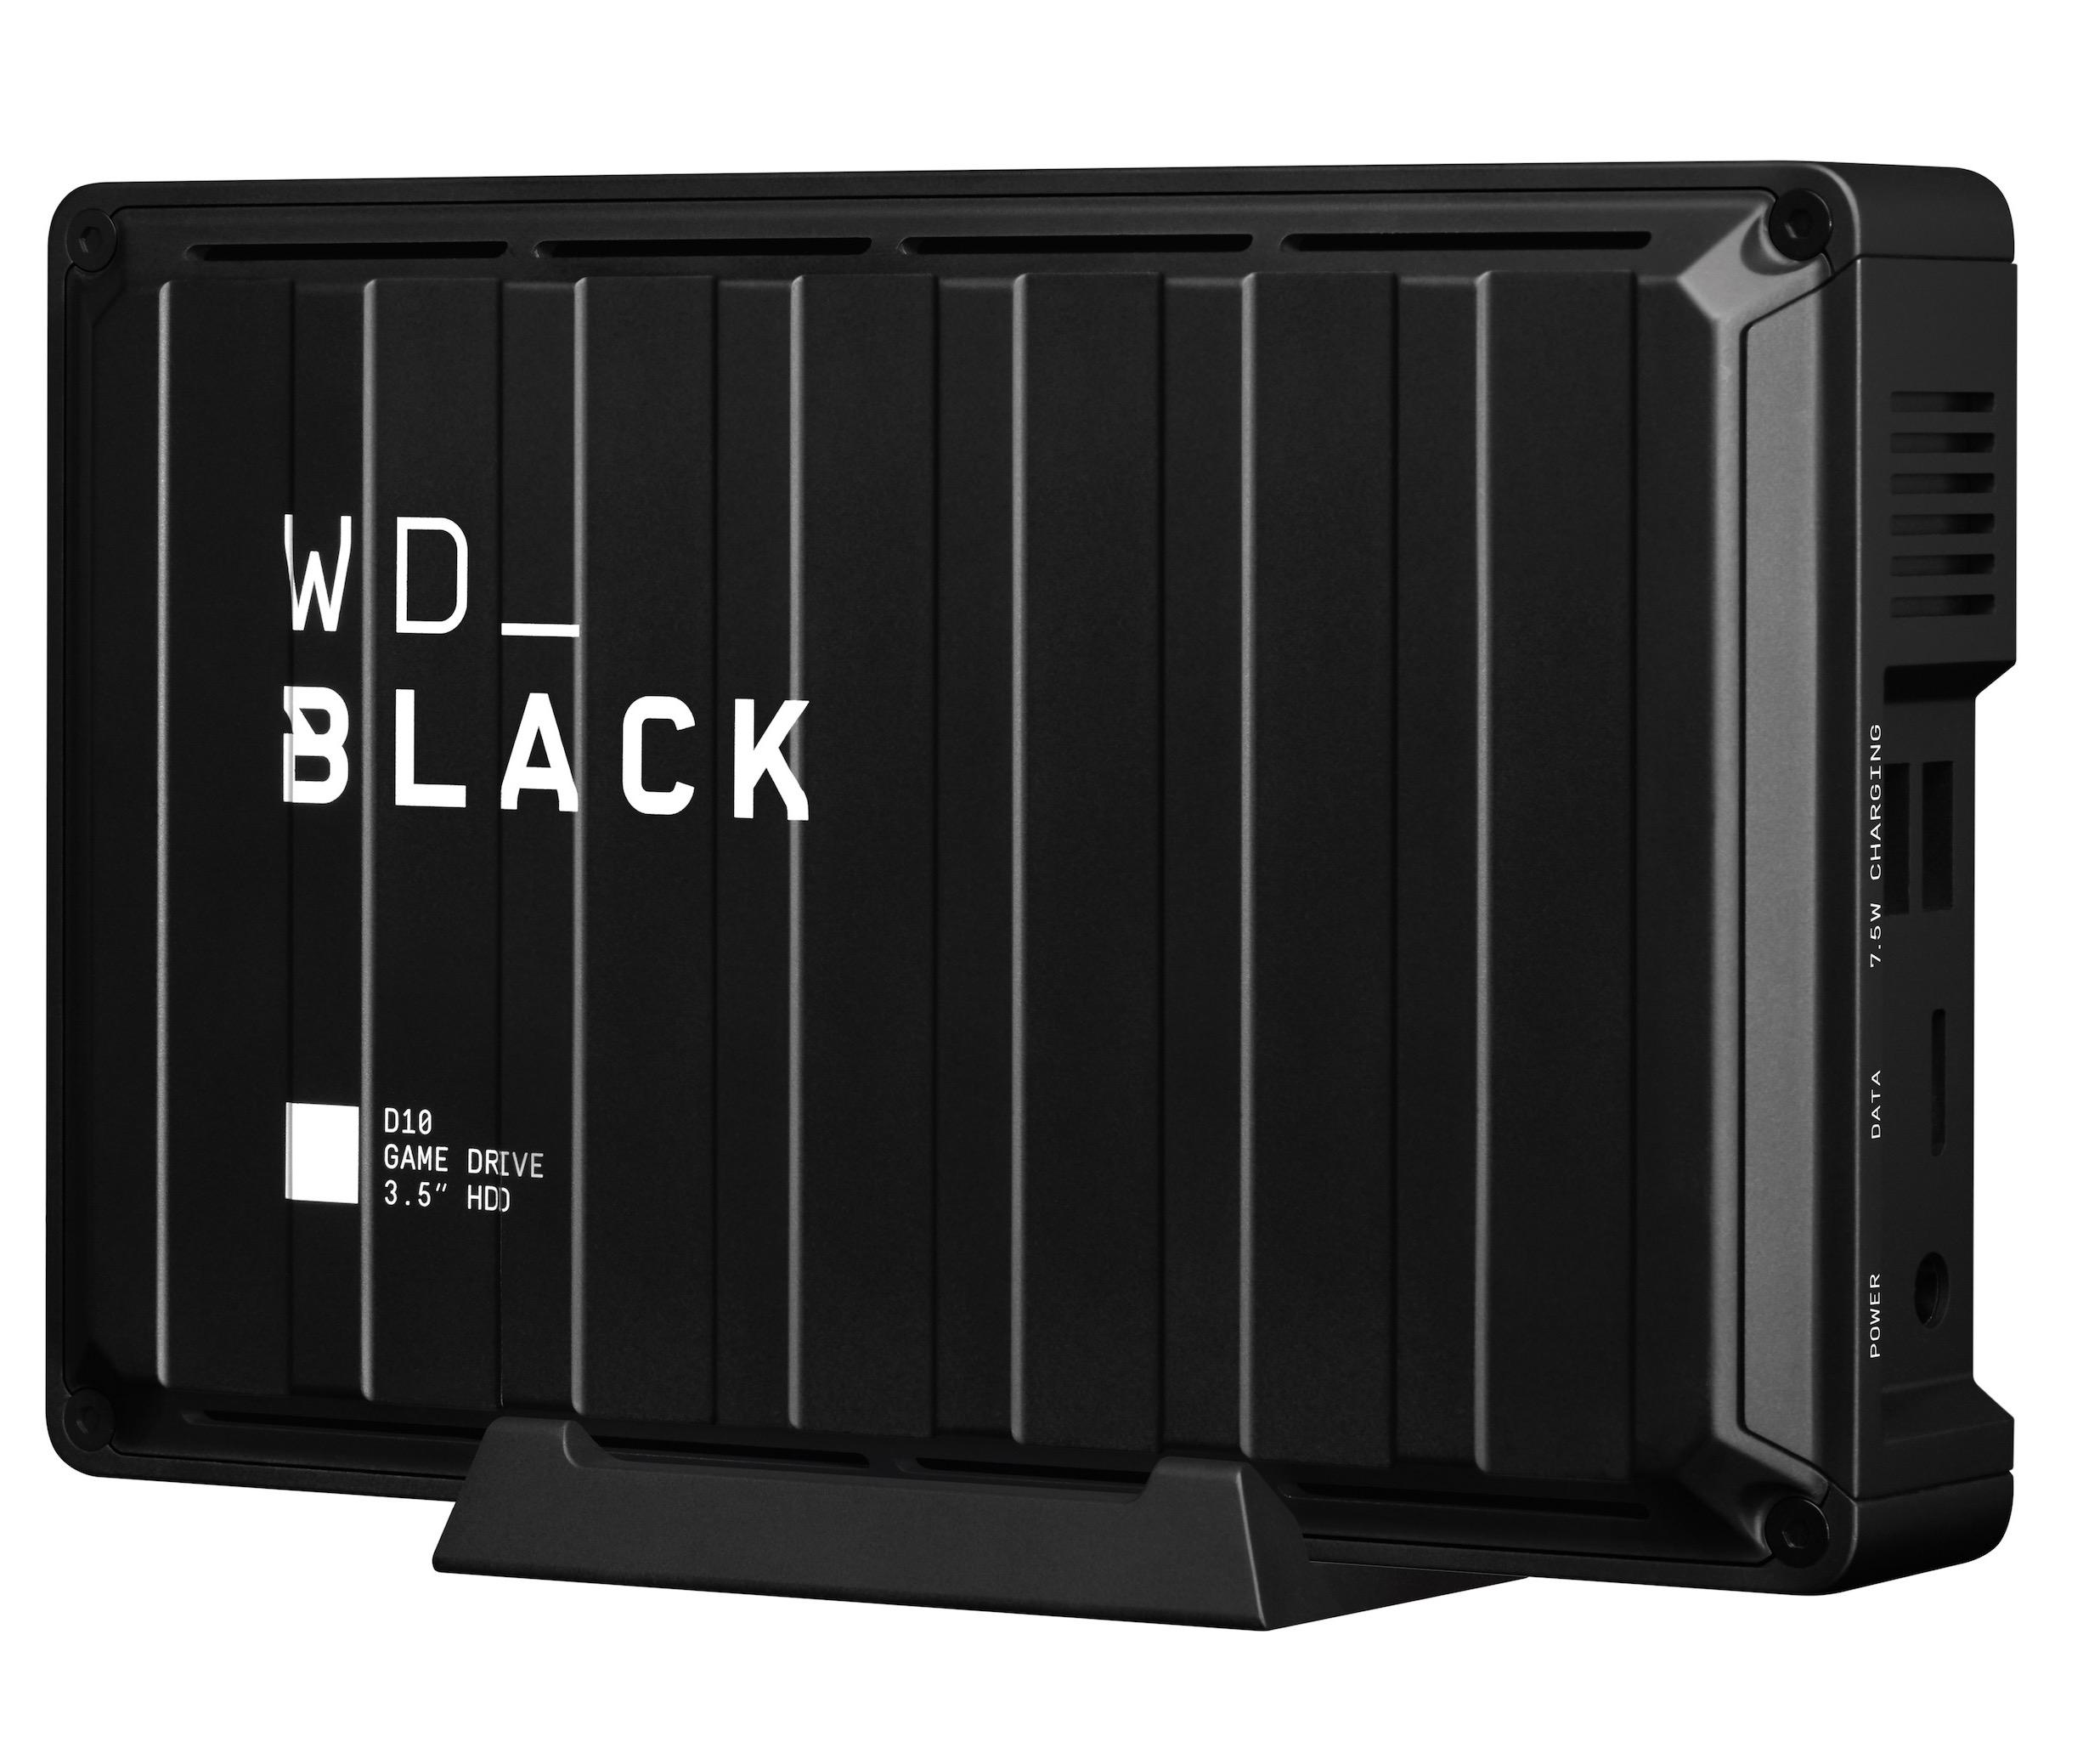 WD Black D10: Best budget performer